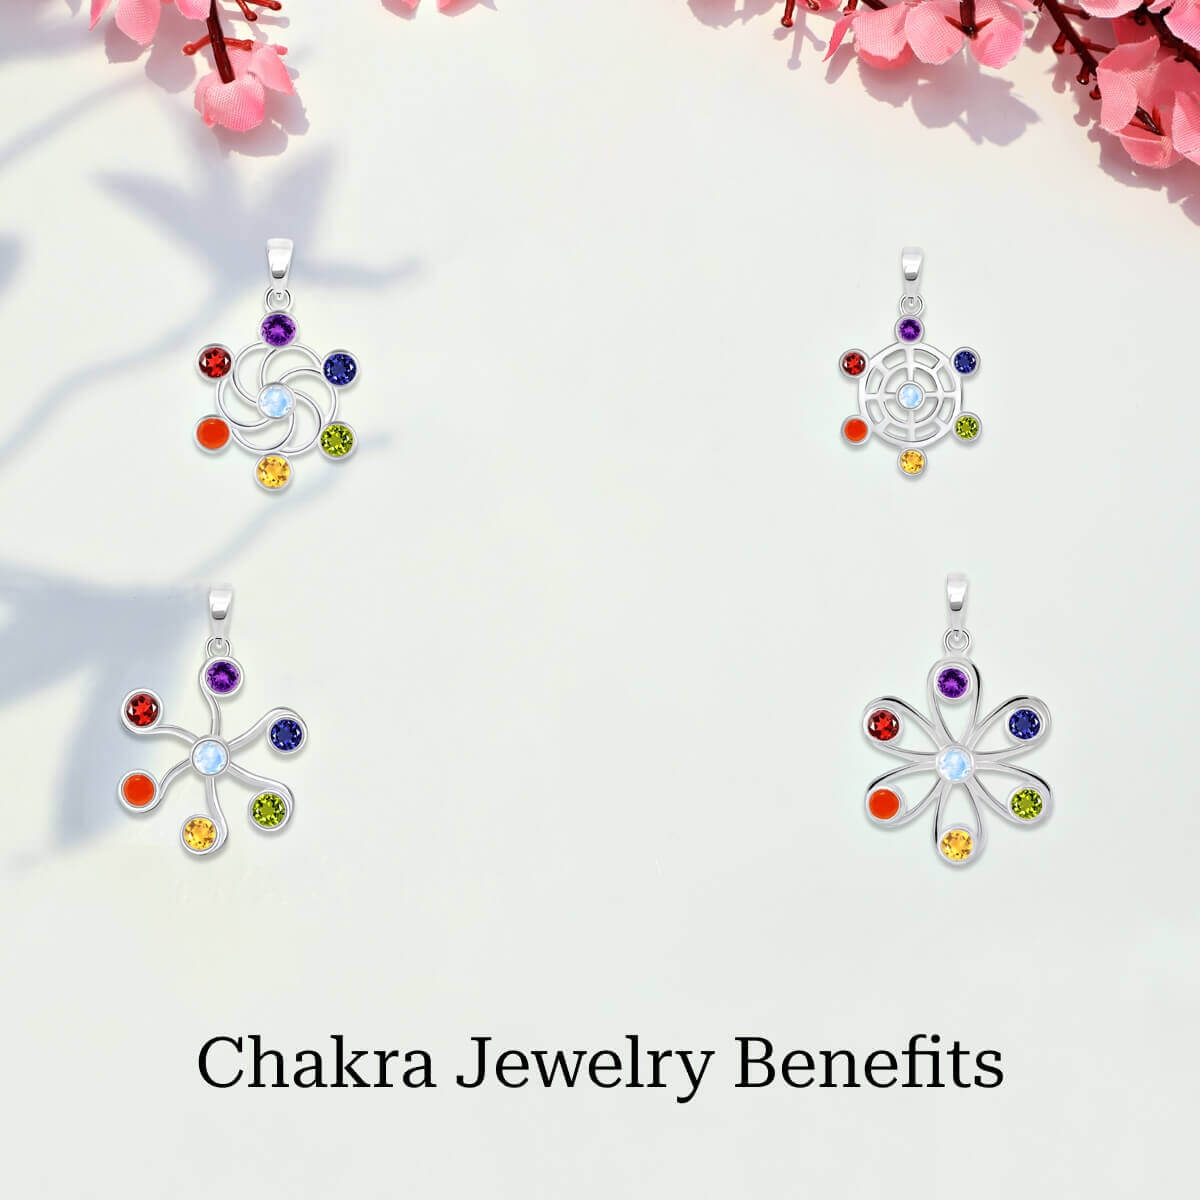 Benefits of wearing Chakra jewelry